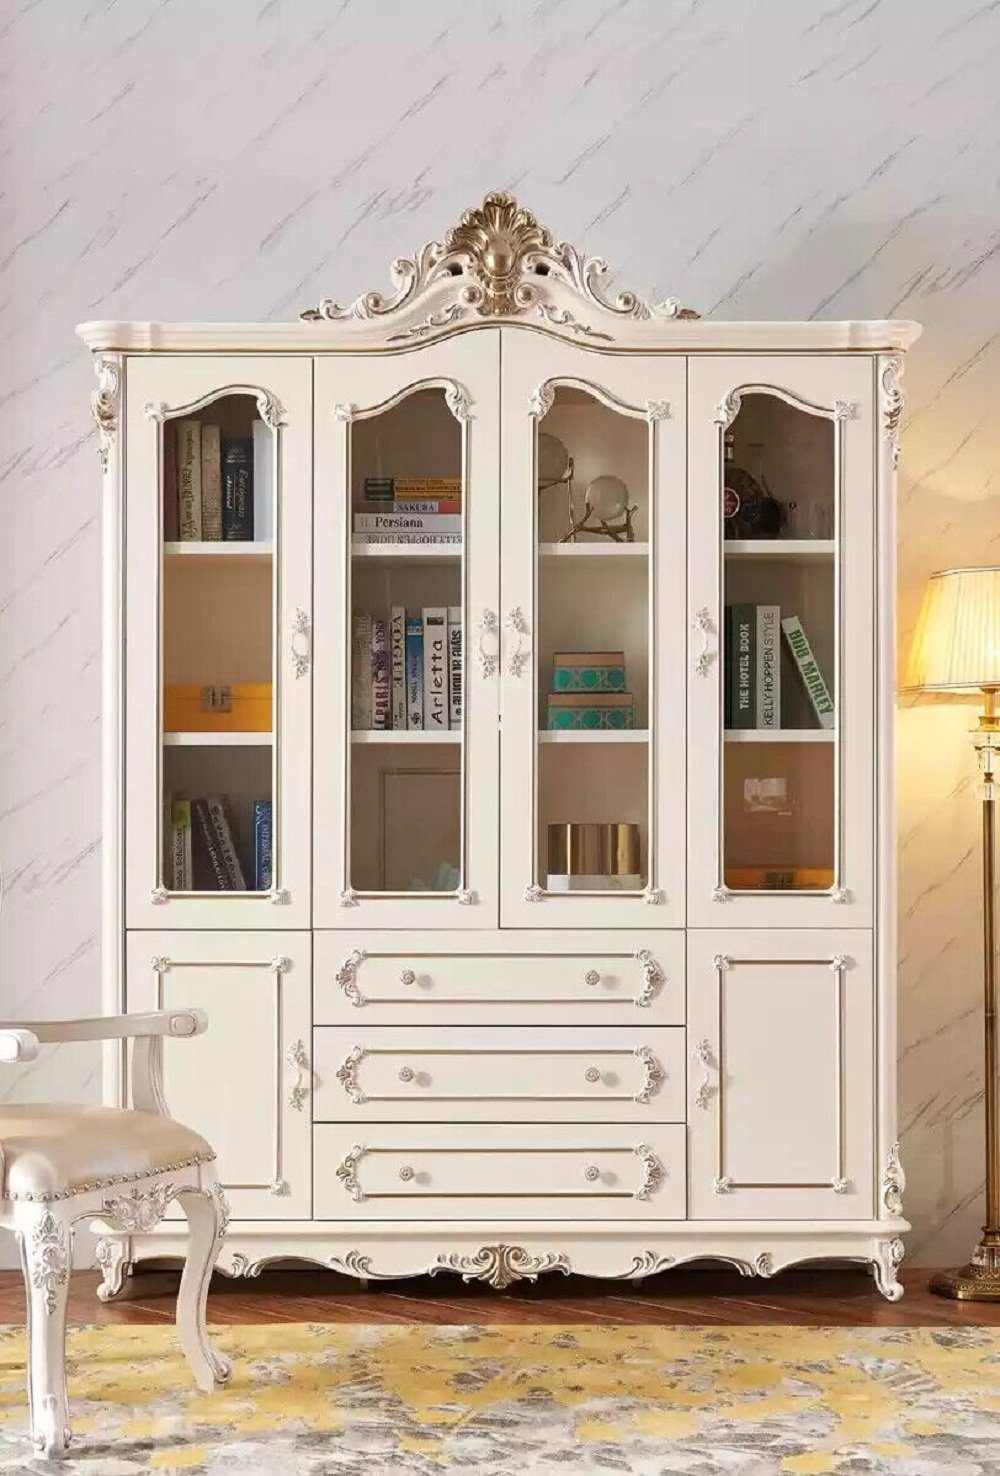 JVmoebel Bücherregal Klassische 1-tlg., Wohnzimmer Europa Weiß Möbel Für Luxusmöbel Bücherregal Neu, Made in